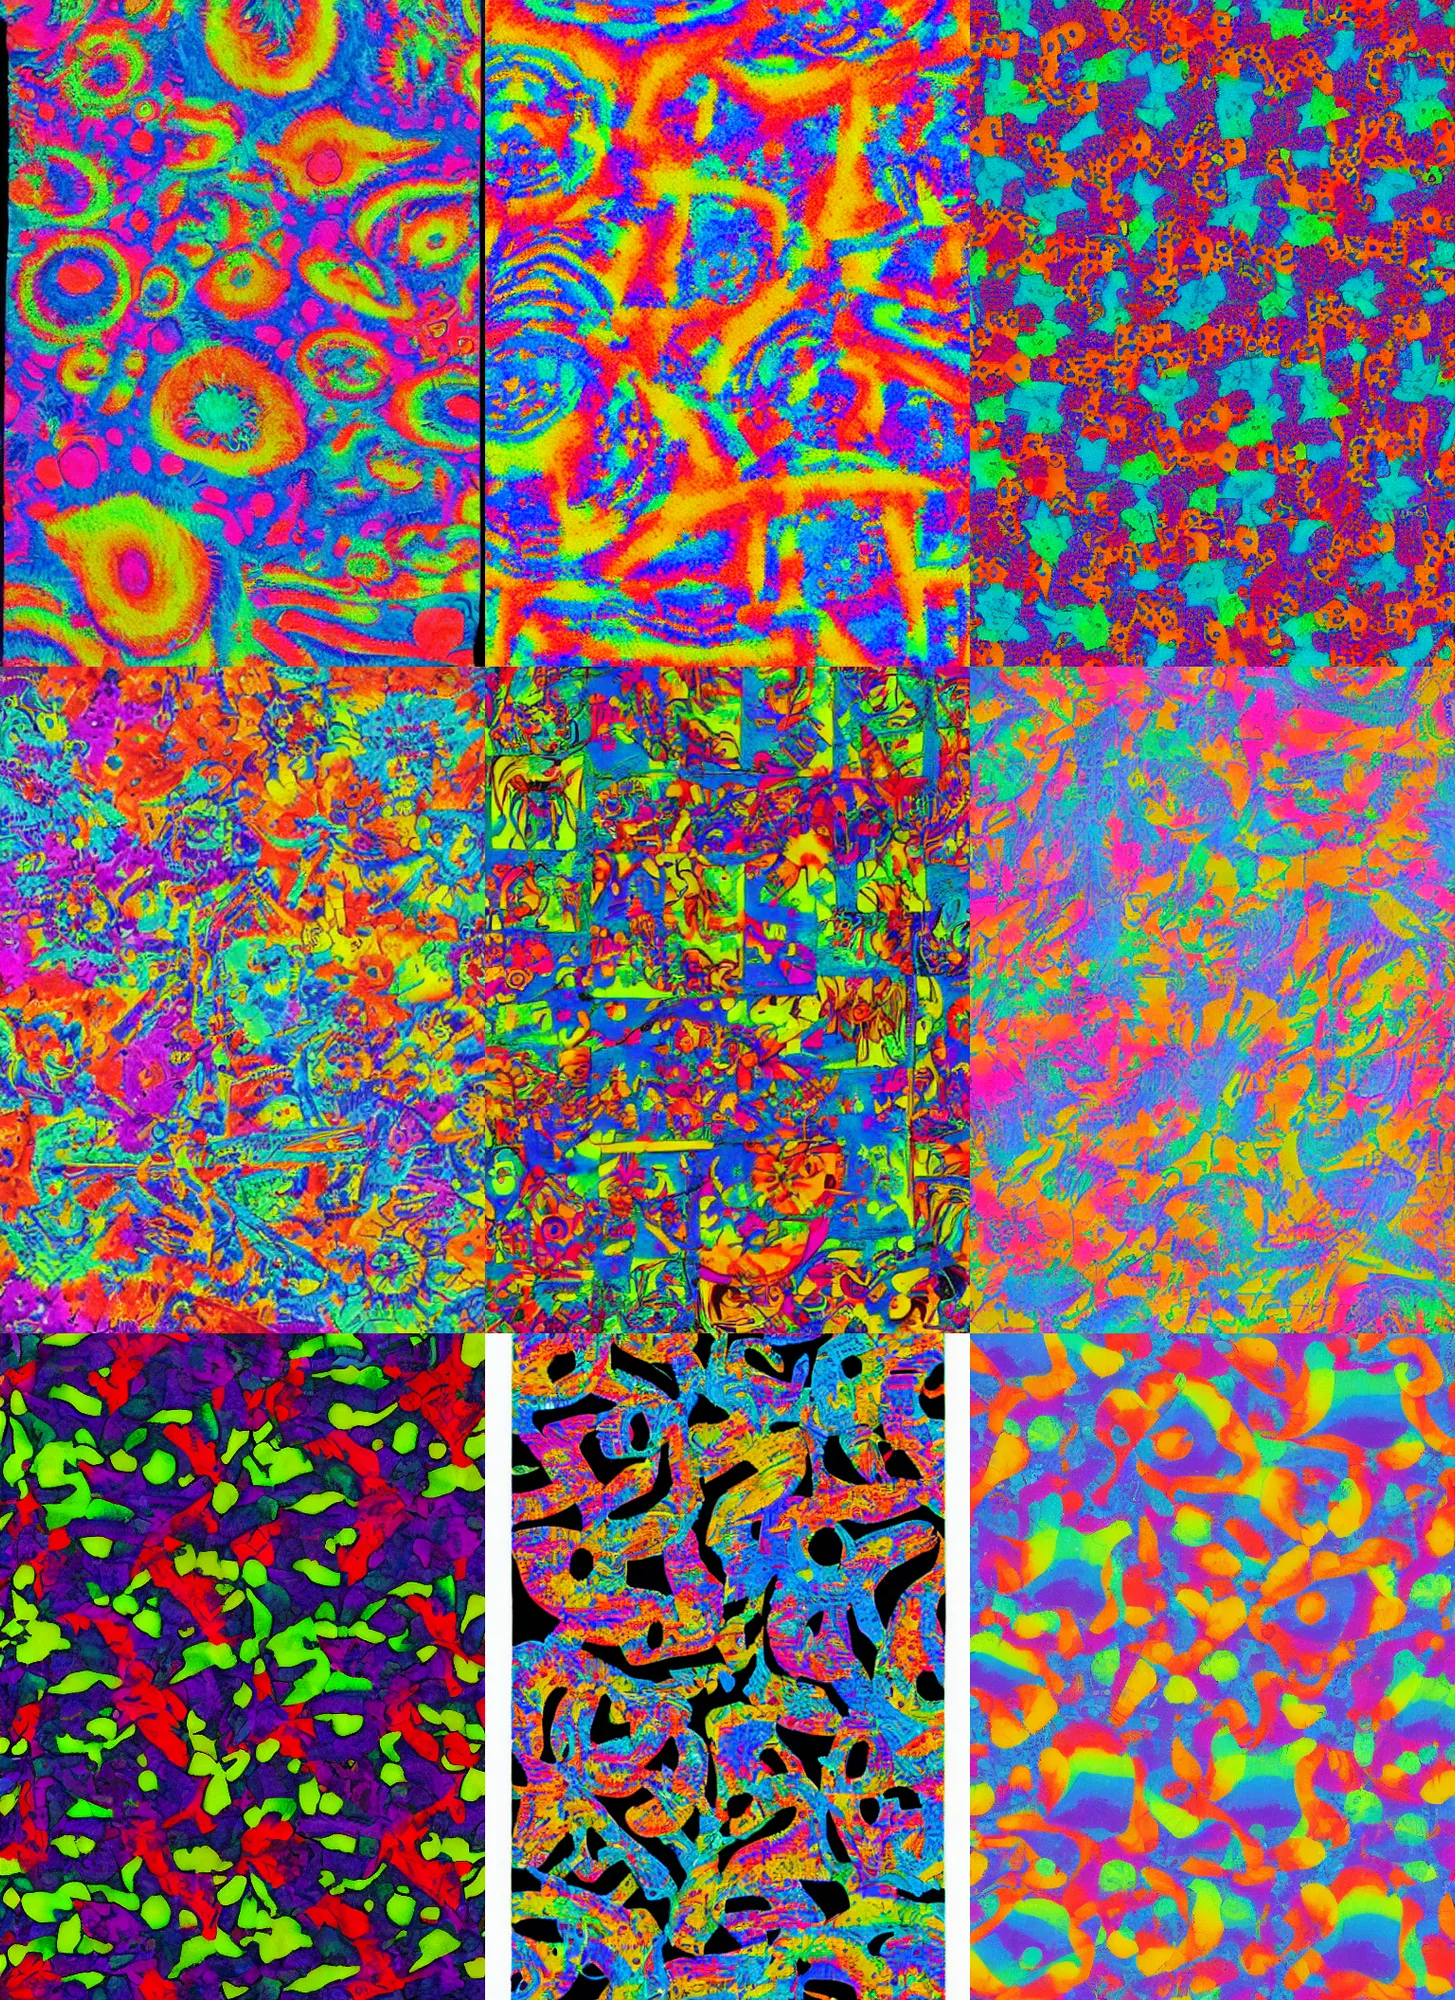 Prompt: LSD blotter sheet, studio photography